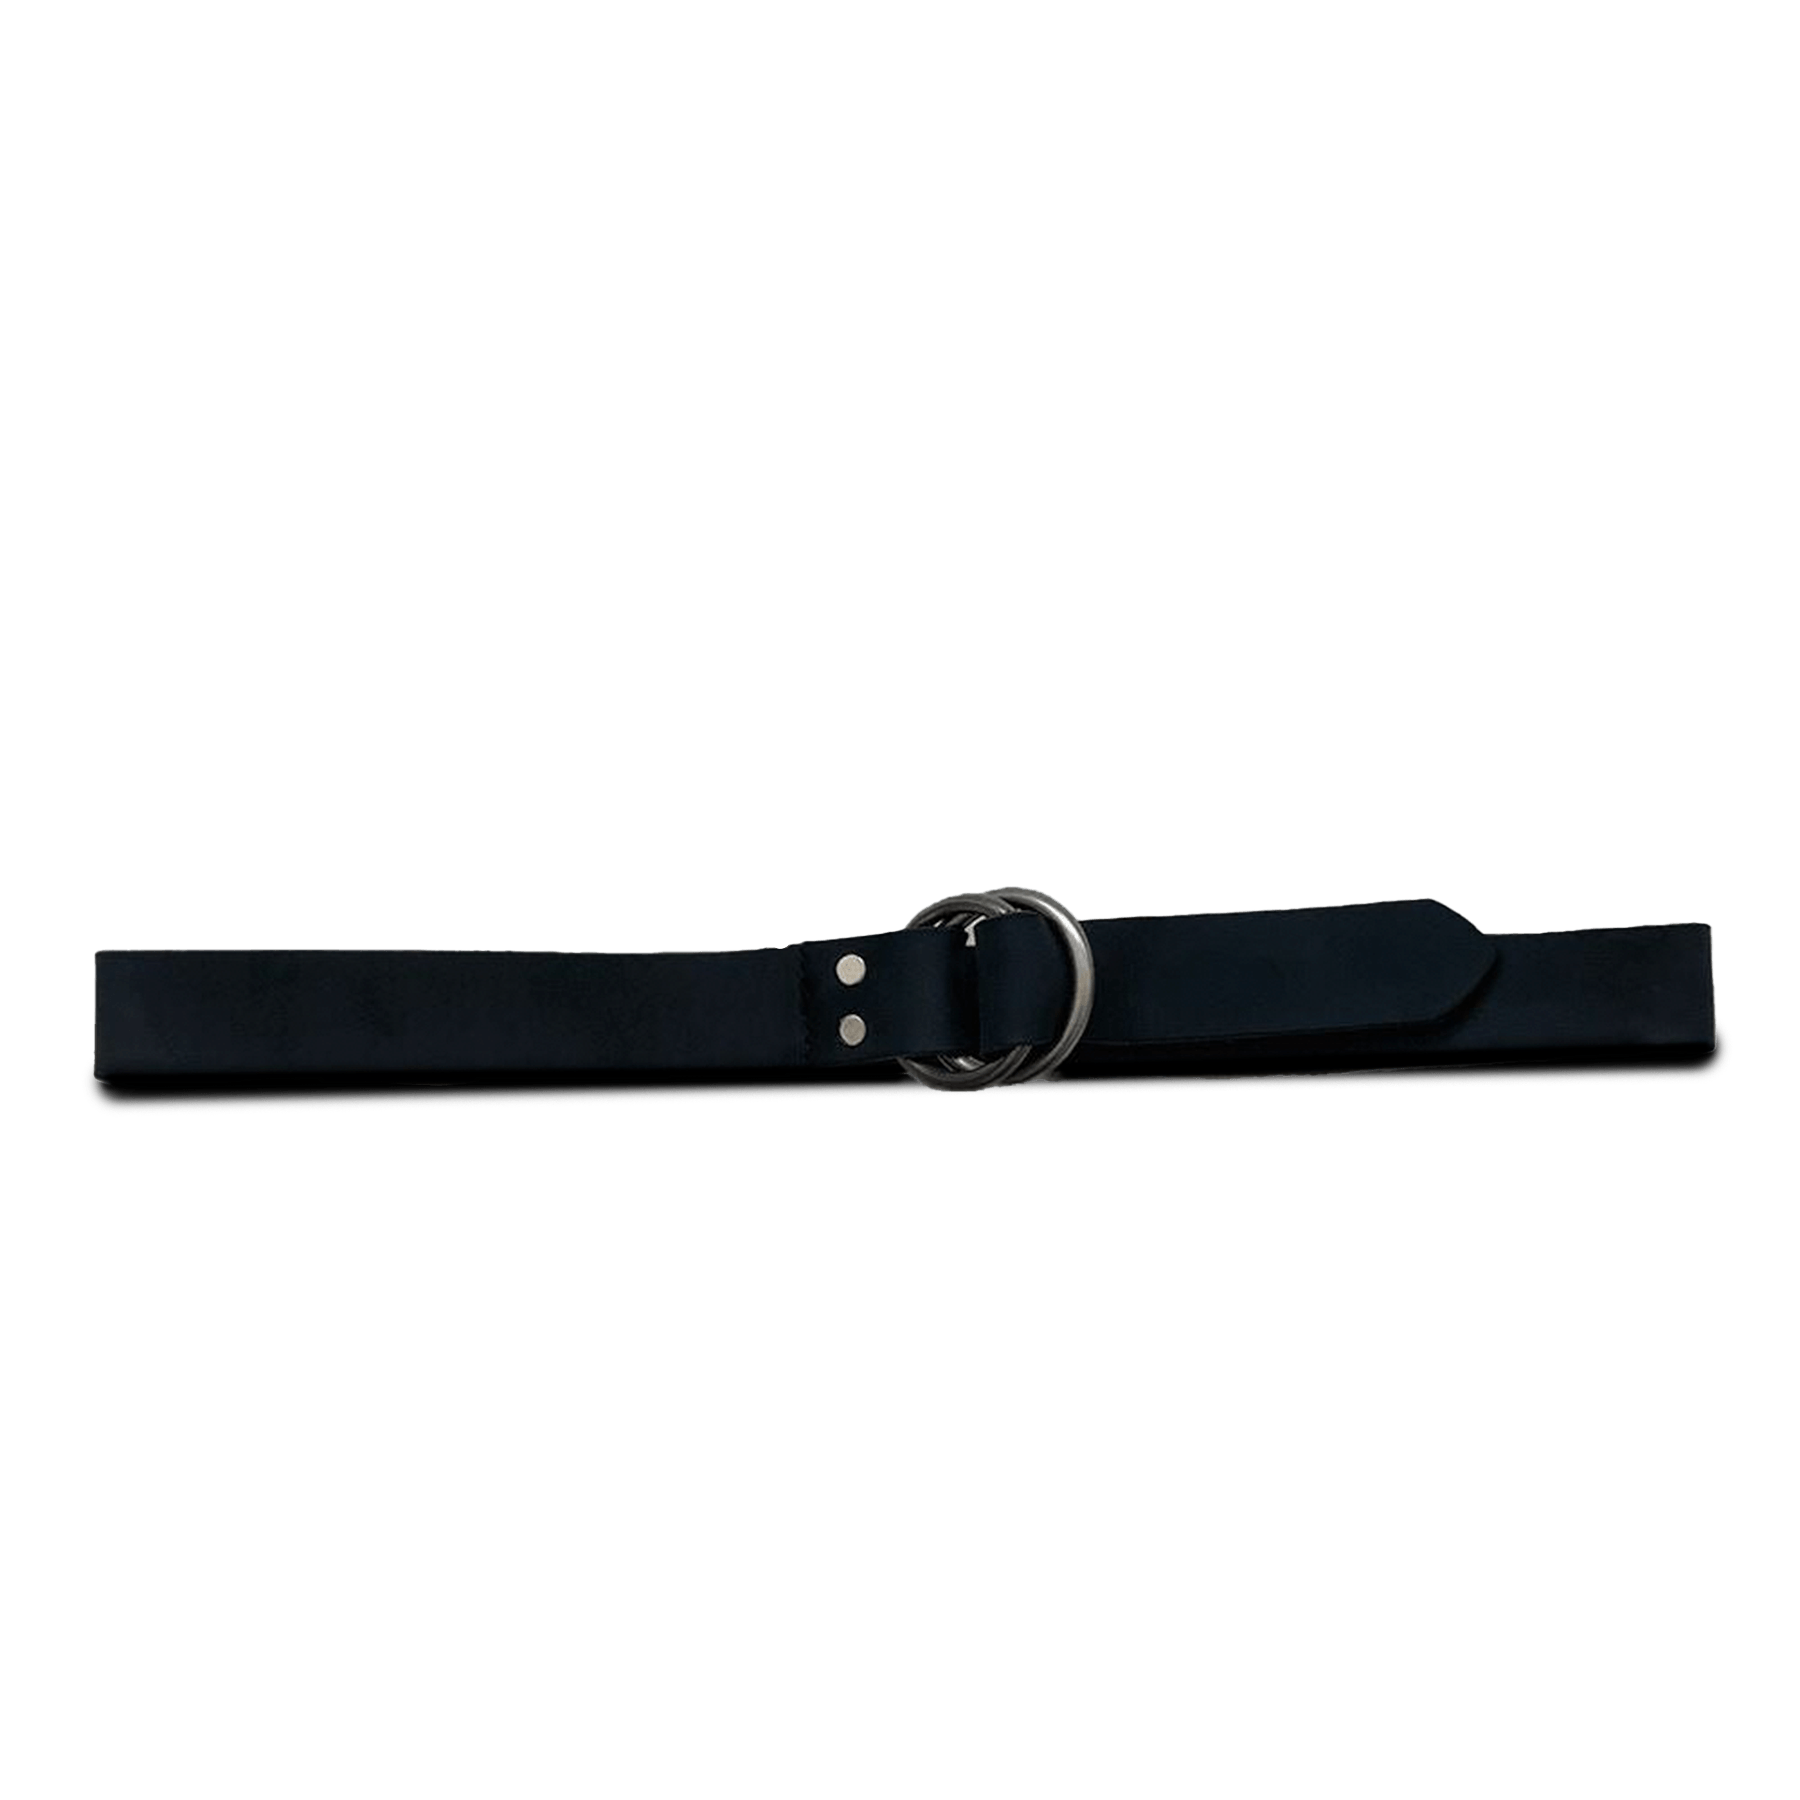 O-ring Leather Belt – Caputo & Co.